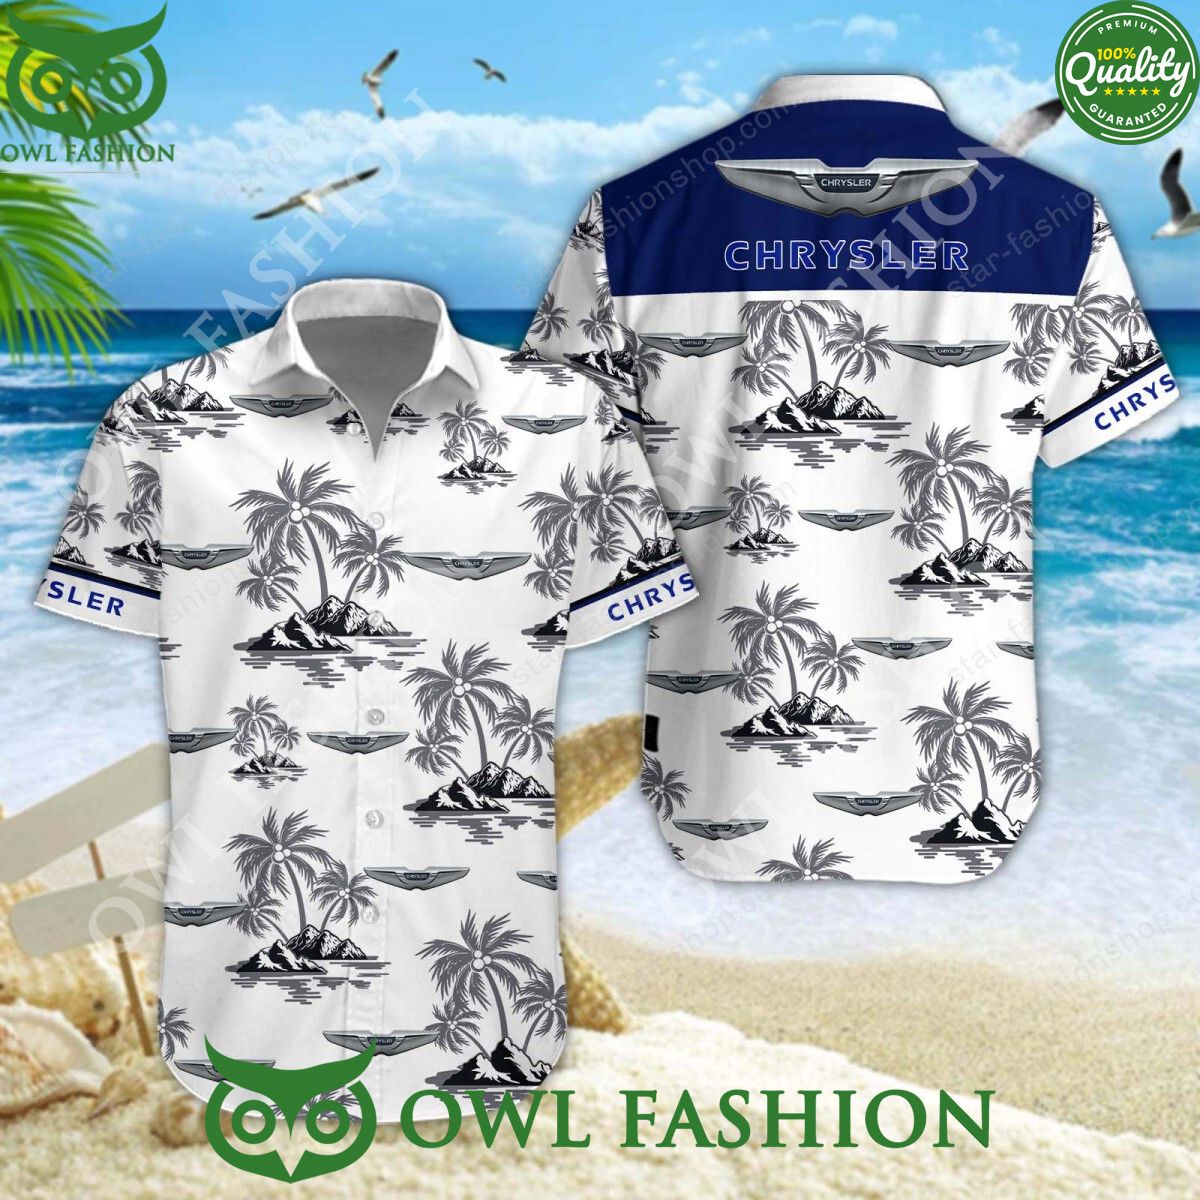 chrysler luxury motor brand hawaiian shirt and shorts 1 iFesv.jpg